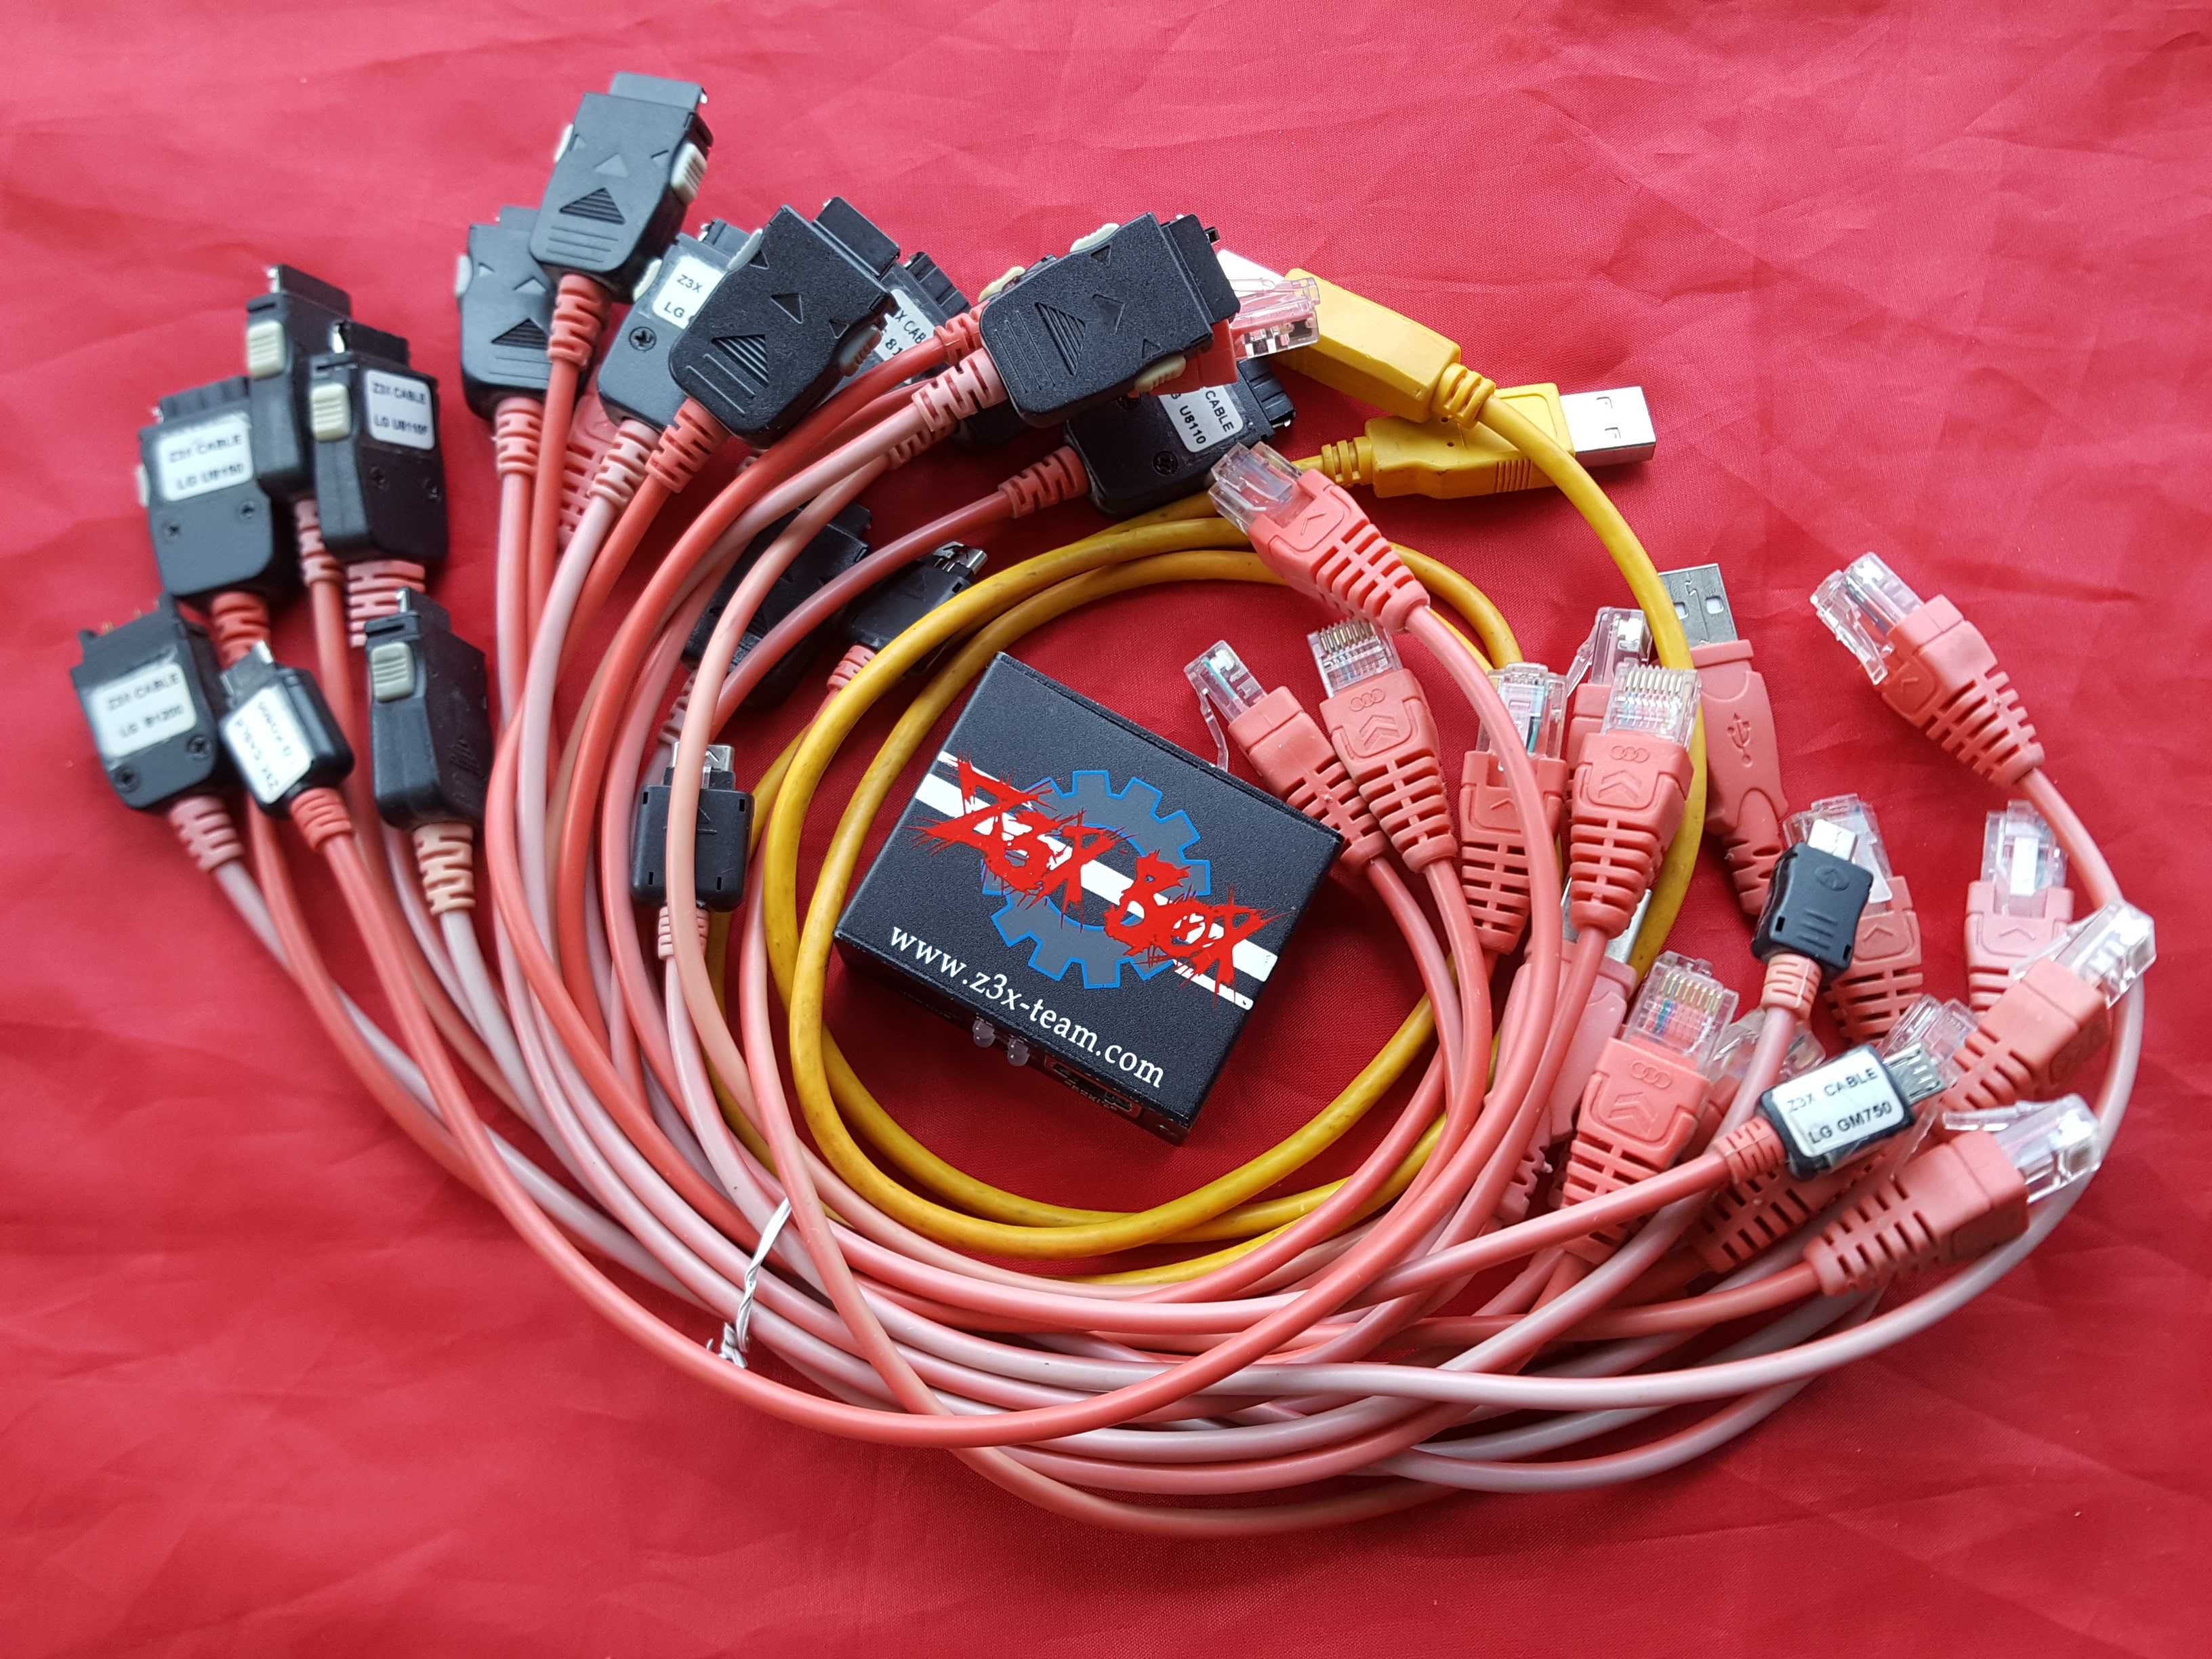 Z3X для LG программатор бокс + набор кабелей